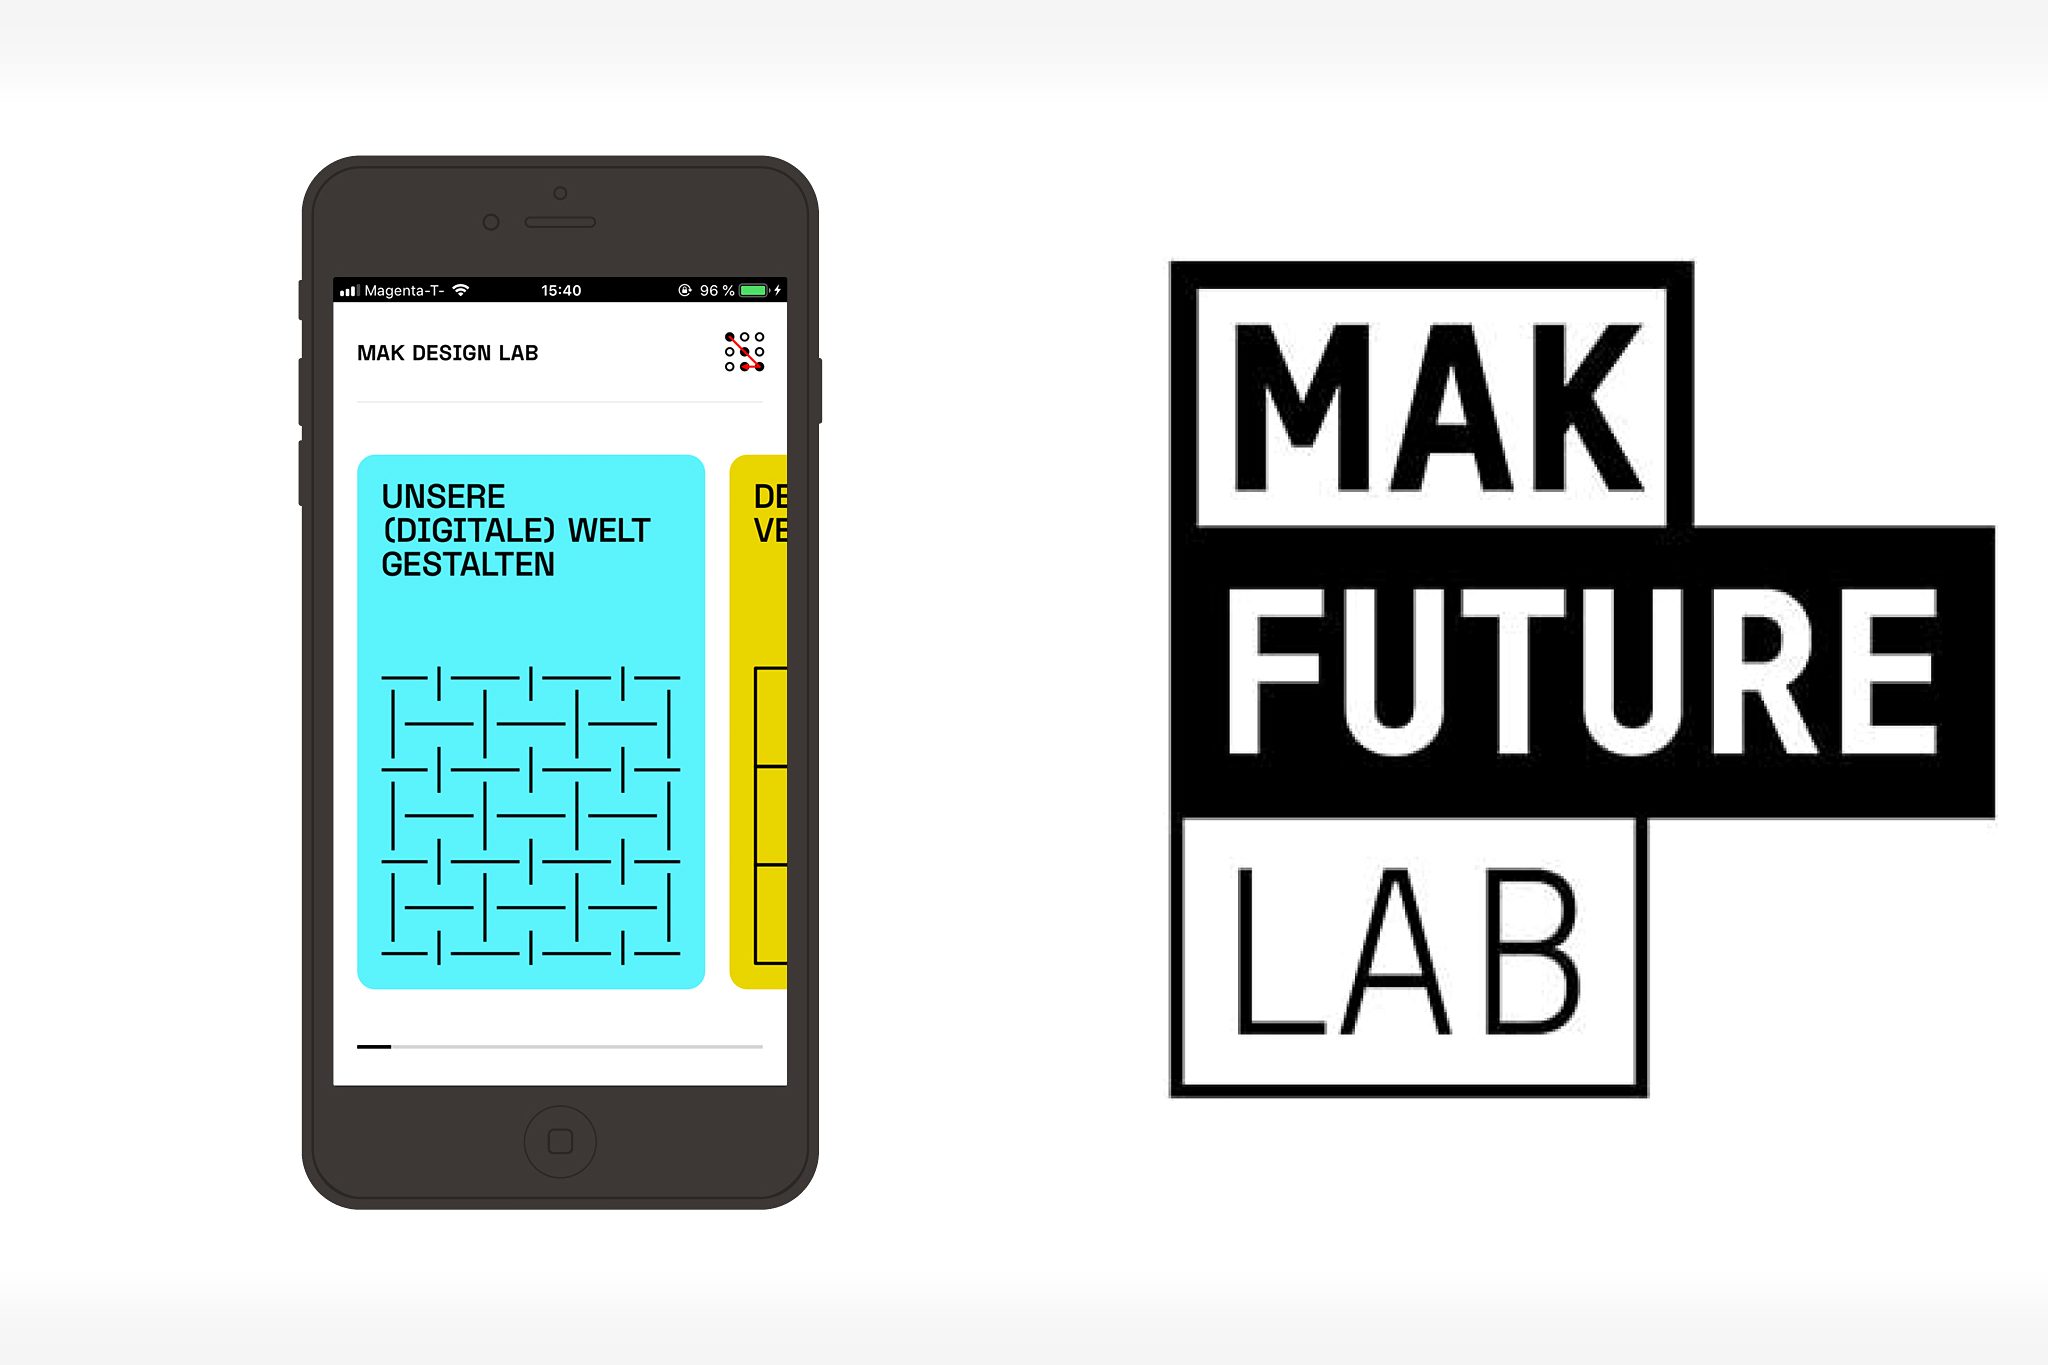 MAK Future Lab App entstand in Kooperation mit dem Bildungsministerium